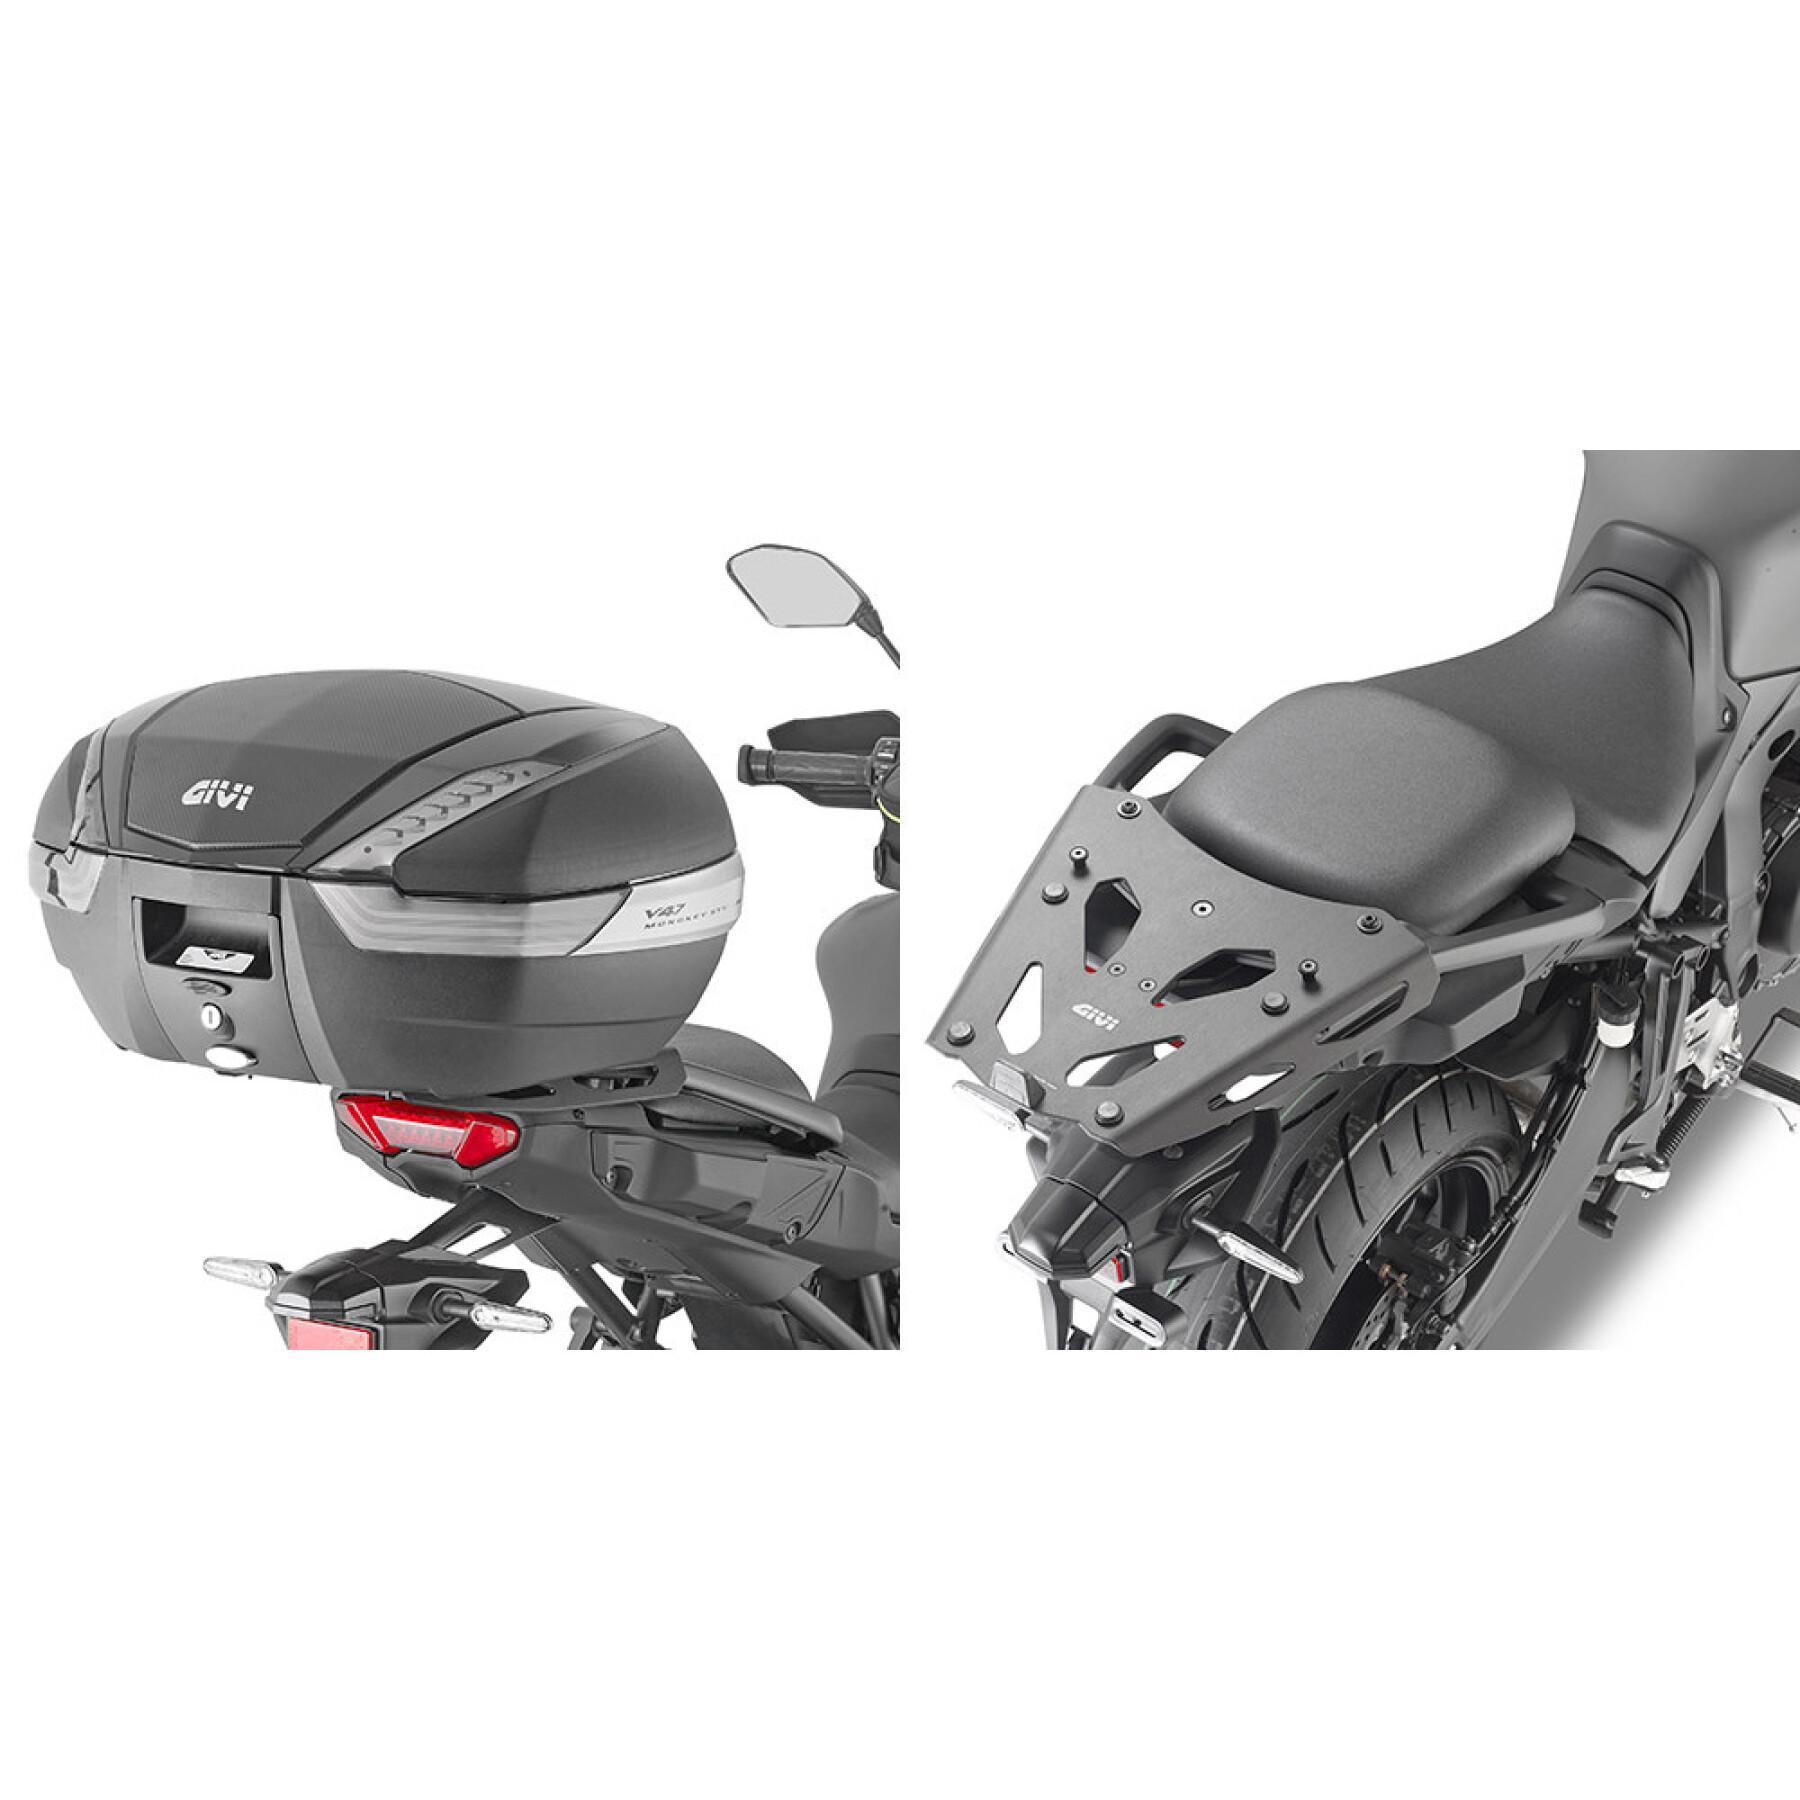 Supporto bauletto moto in alluminio Givi Yamaha Tracer 9/Tracer 9 GT (21)